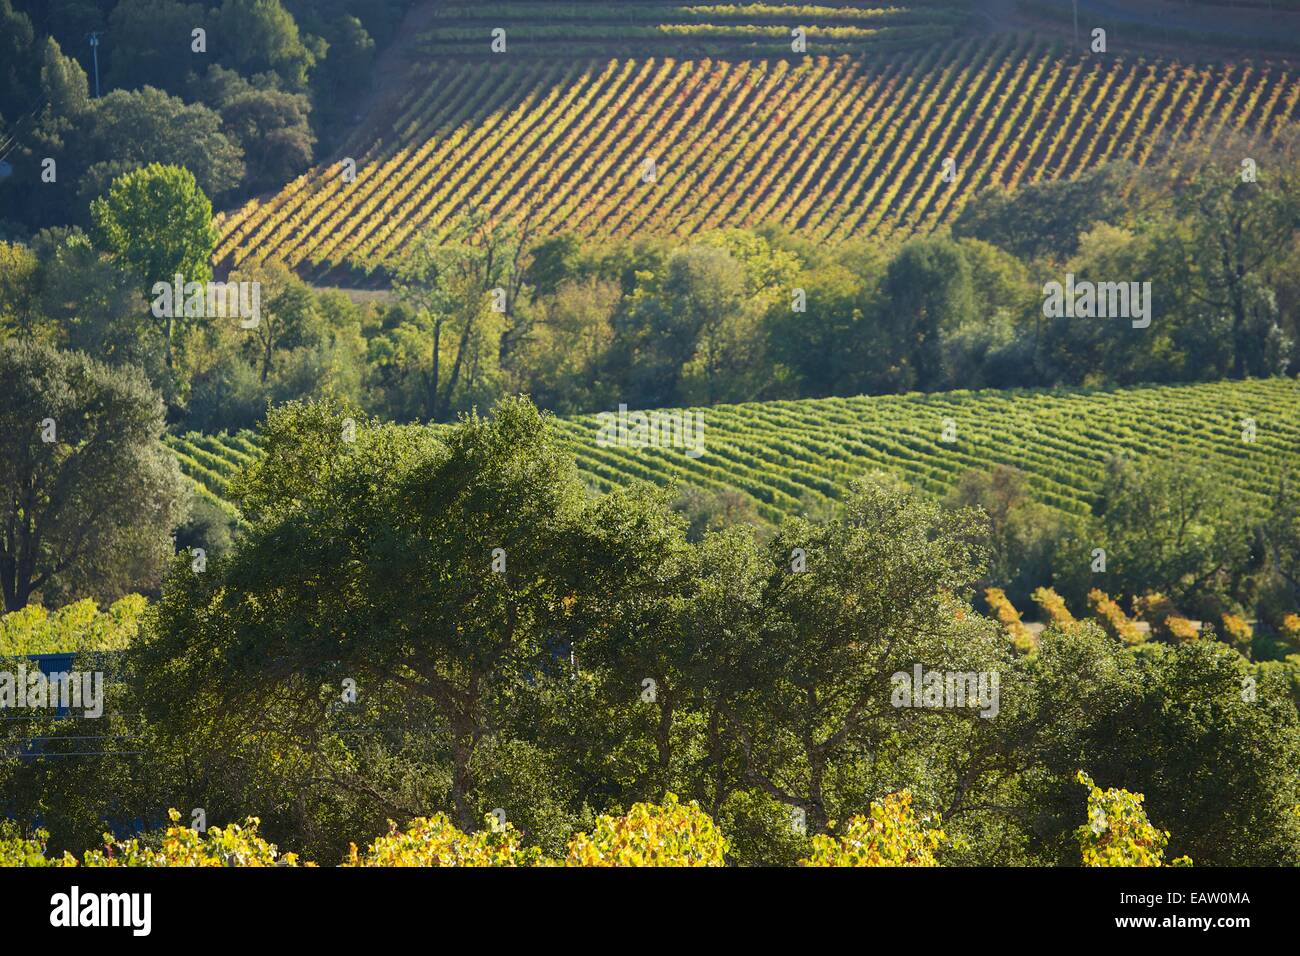 Schöne Aussicht auf die Weinberge im berühmten Napa Tal Wein-Land in Nord-Kalifornien, USA. Stockfoto